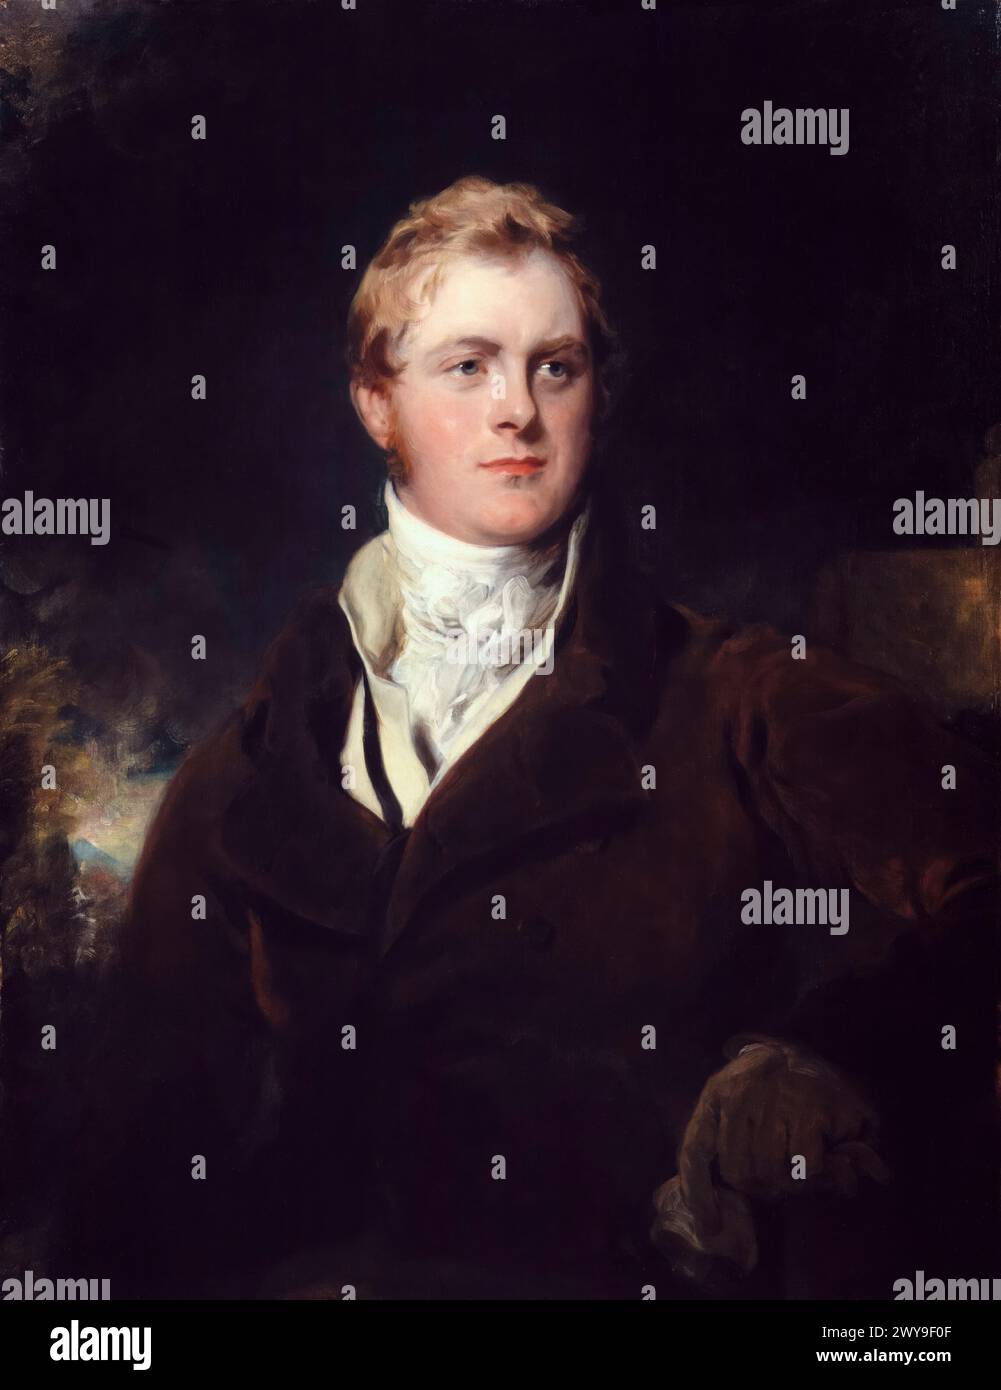 Frederick John Robinson, i visconte Goderich (1782-1859), politico Tory e primo ministro del Regno Unito 1827-1828, ritratto in olio su tela di Sir Thomas Lawrence, circa 1824 Foto Stock